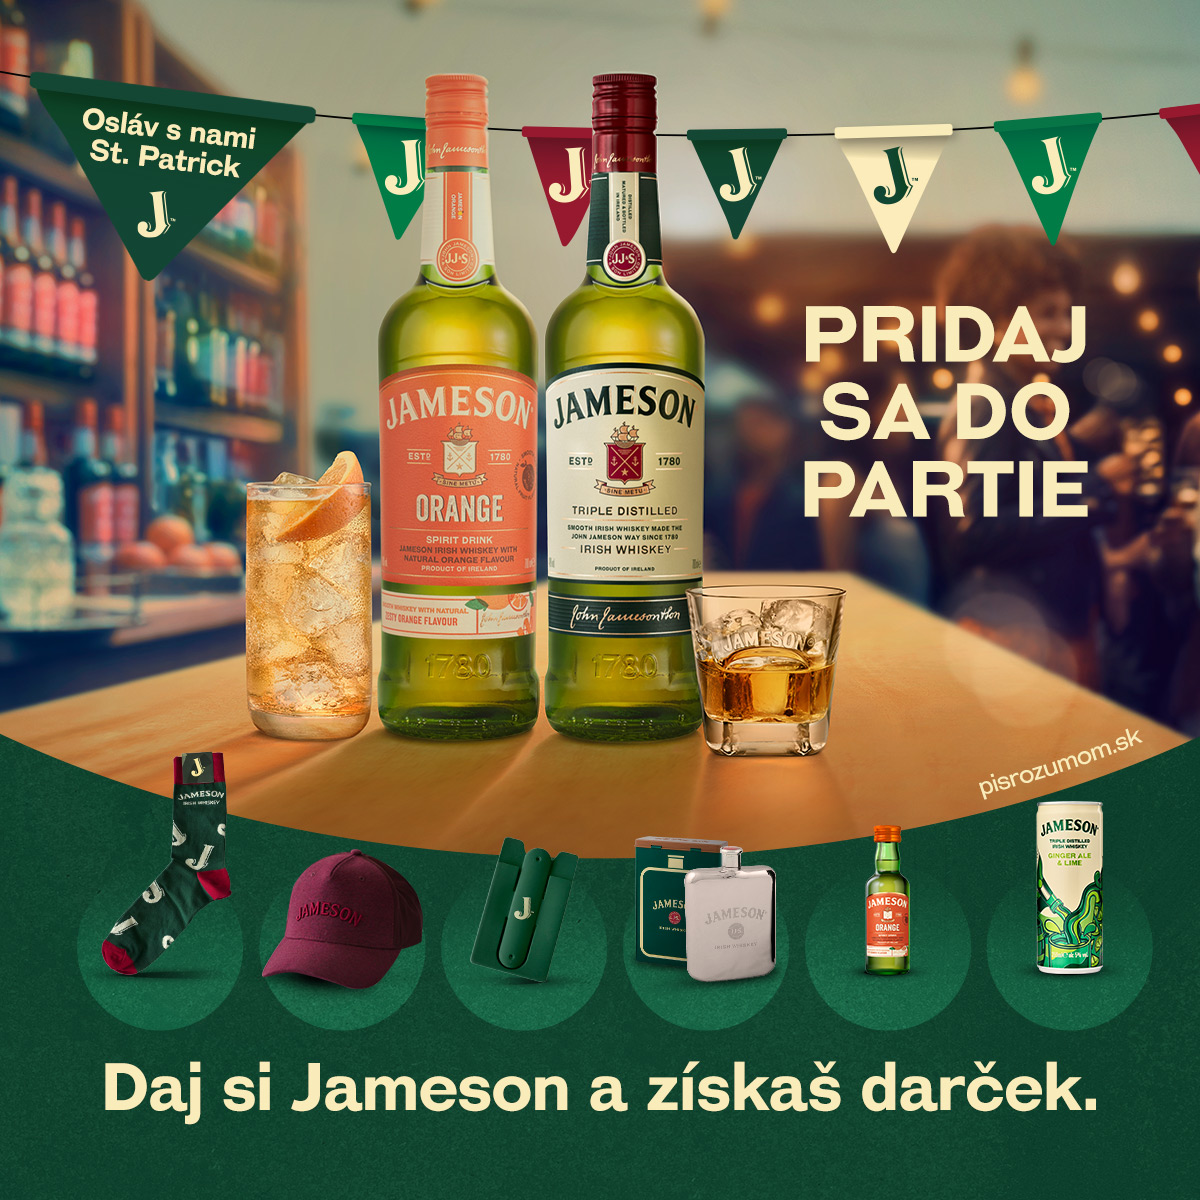 Od dnešného dňa 17.3. St. Patrick's Day máte možnosť súťažiť s @jamesonsk u nás v Spilke! 🍻🍀💚

🍀 Objednaj si 2 Jameson drinky a získaj žreb - KAŽDÝ ŽREB JE VÝHERNÝ‼️💯
✅ hrá sa o 52 CIEN #objednaj2aVYHRAJ

Však je dnes piatok, tak čo budeš⁉️
🍀 Zober kamošov a poďte si užiť deň do Spilky s Jameson drinkami, zeleným čapovaným pivkom a skvelou kuchyňou! 🍻🍀💚

🍻 NA ZDRAVIE ST. PATRICK ✅

#svätyPatrik #zelenépivo #reštauráciaSpilka #Bratislava #tradičnákuchyňa #oslava #dobréjedlo #priatelskáatmosféra